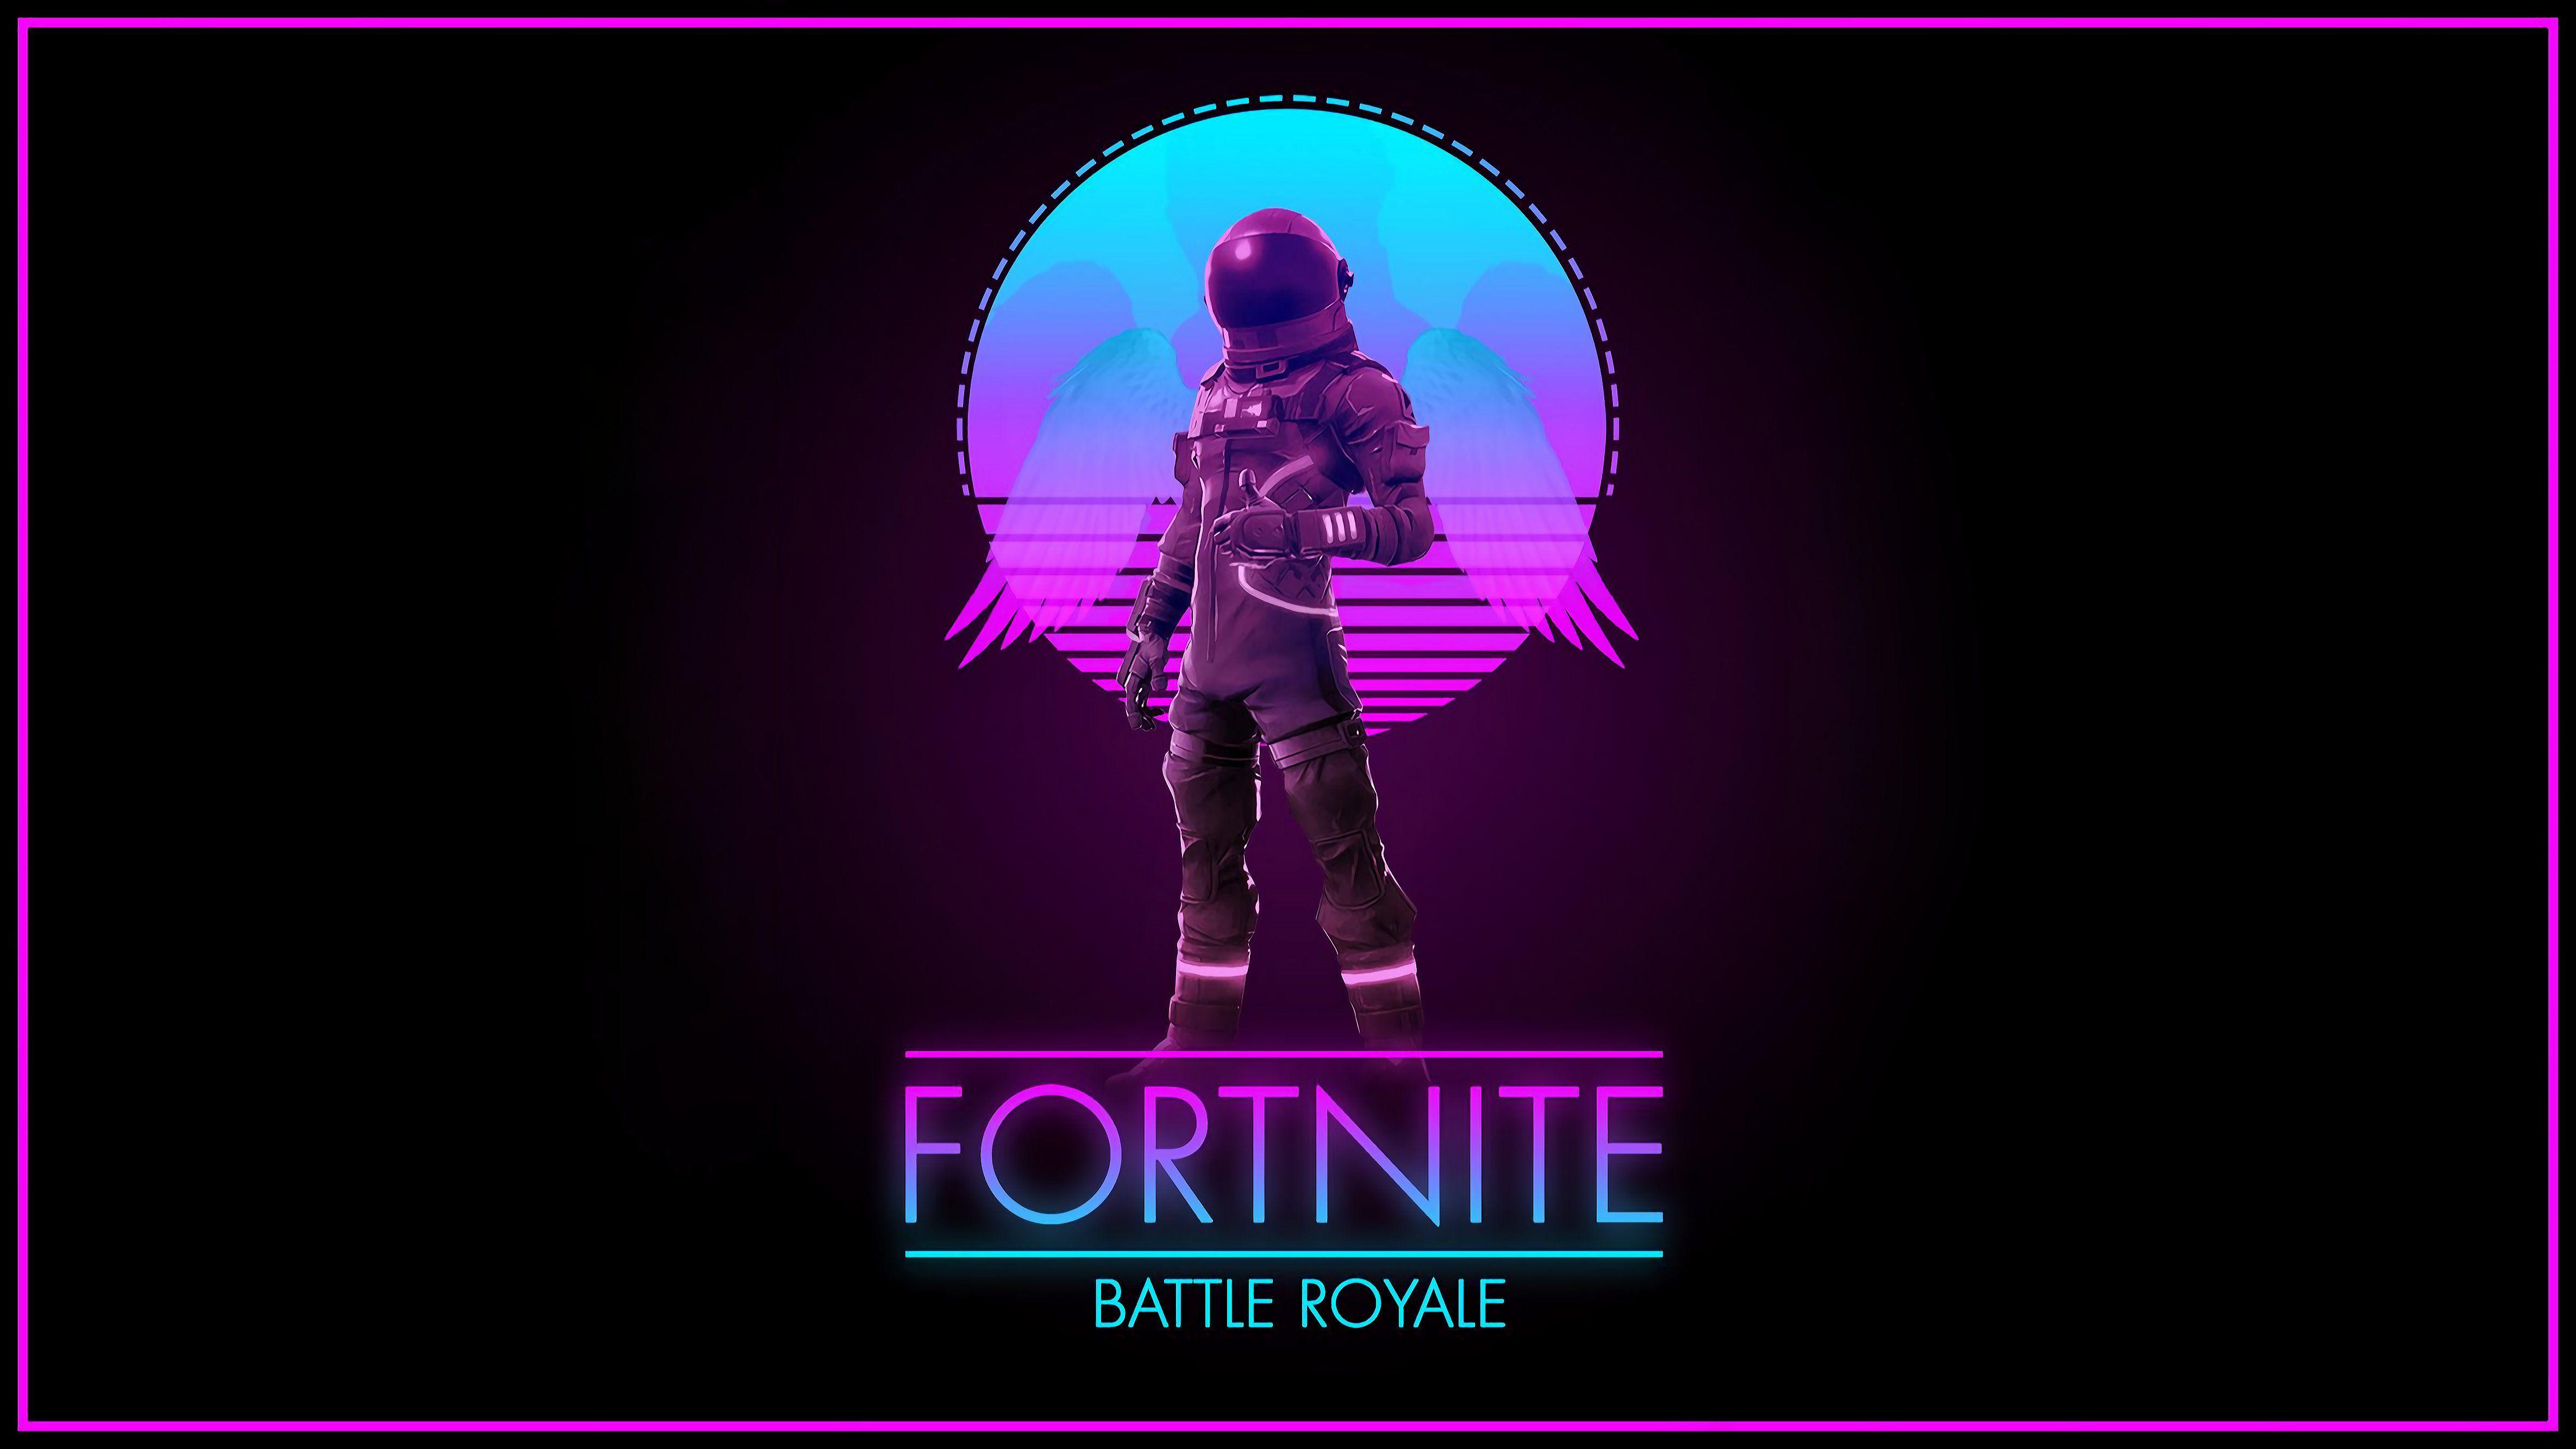 The logo for fortnite battle royale - Fortnite